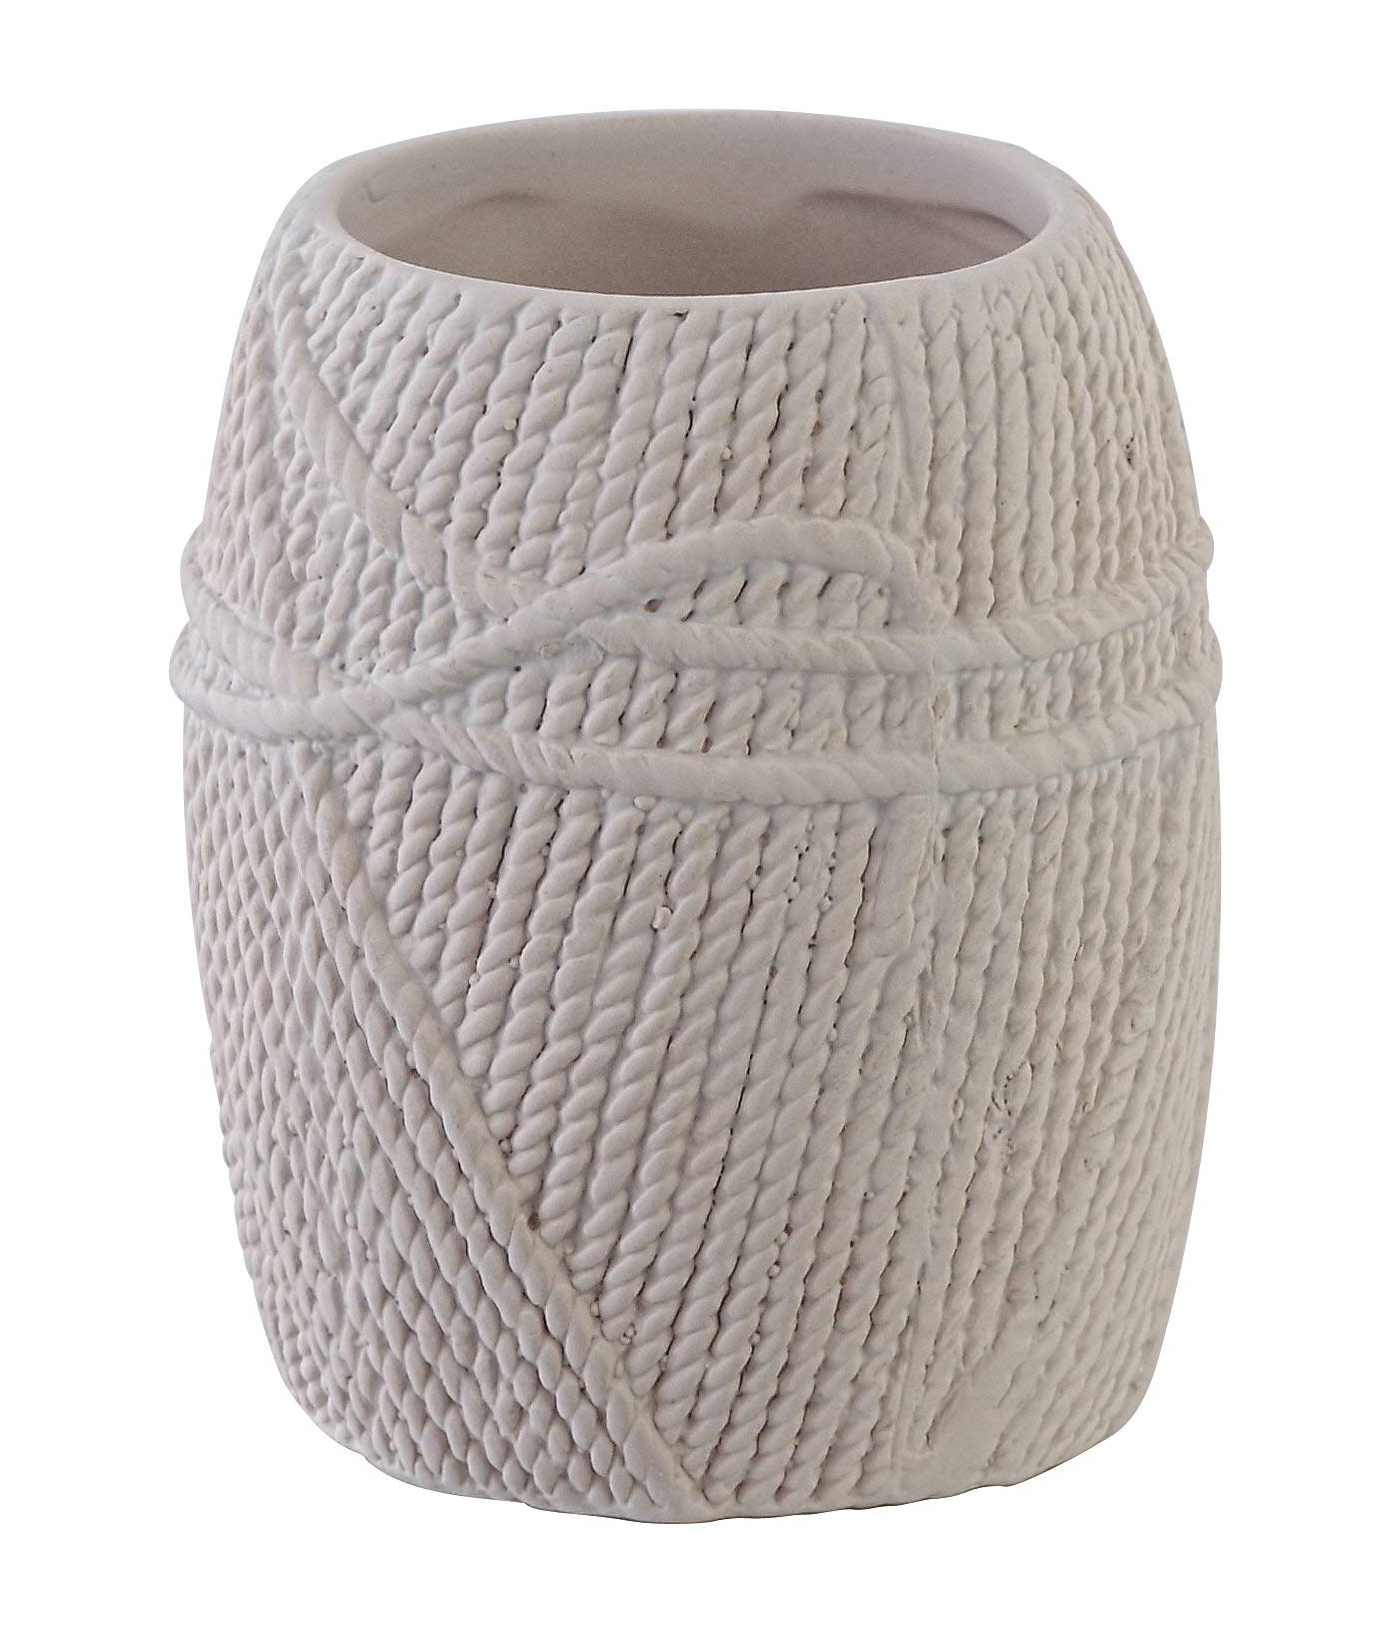 Porta spazzolino linea lana in ceramica bianco